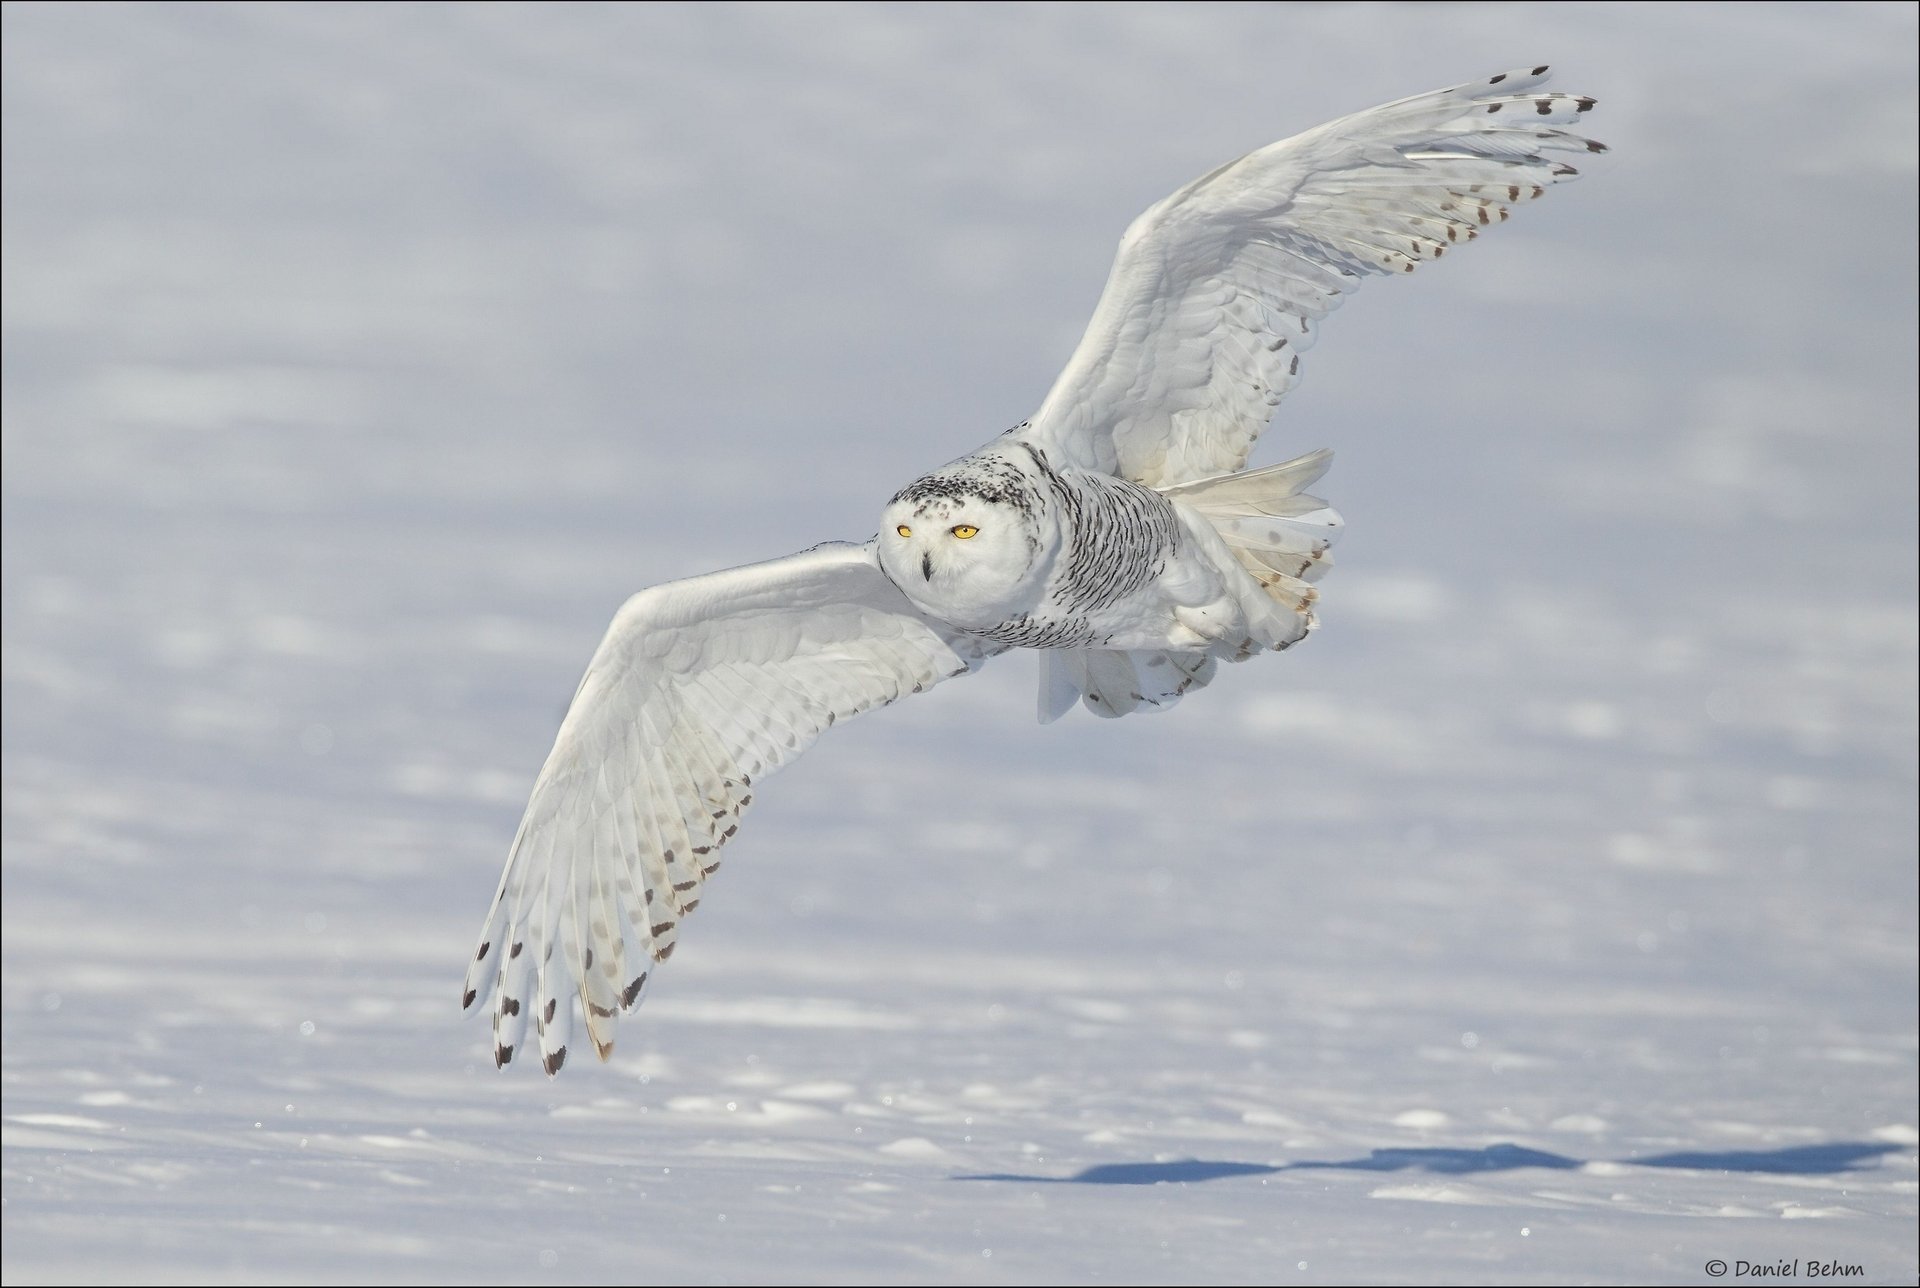 Полярная сова летит на фоне белого снега